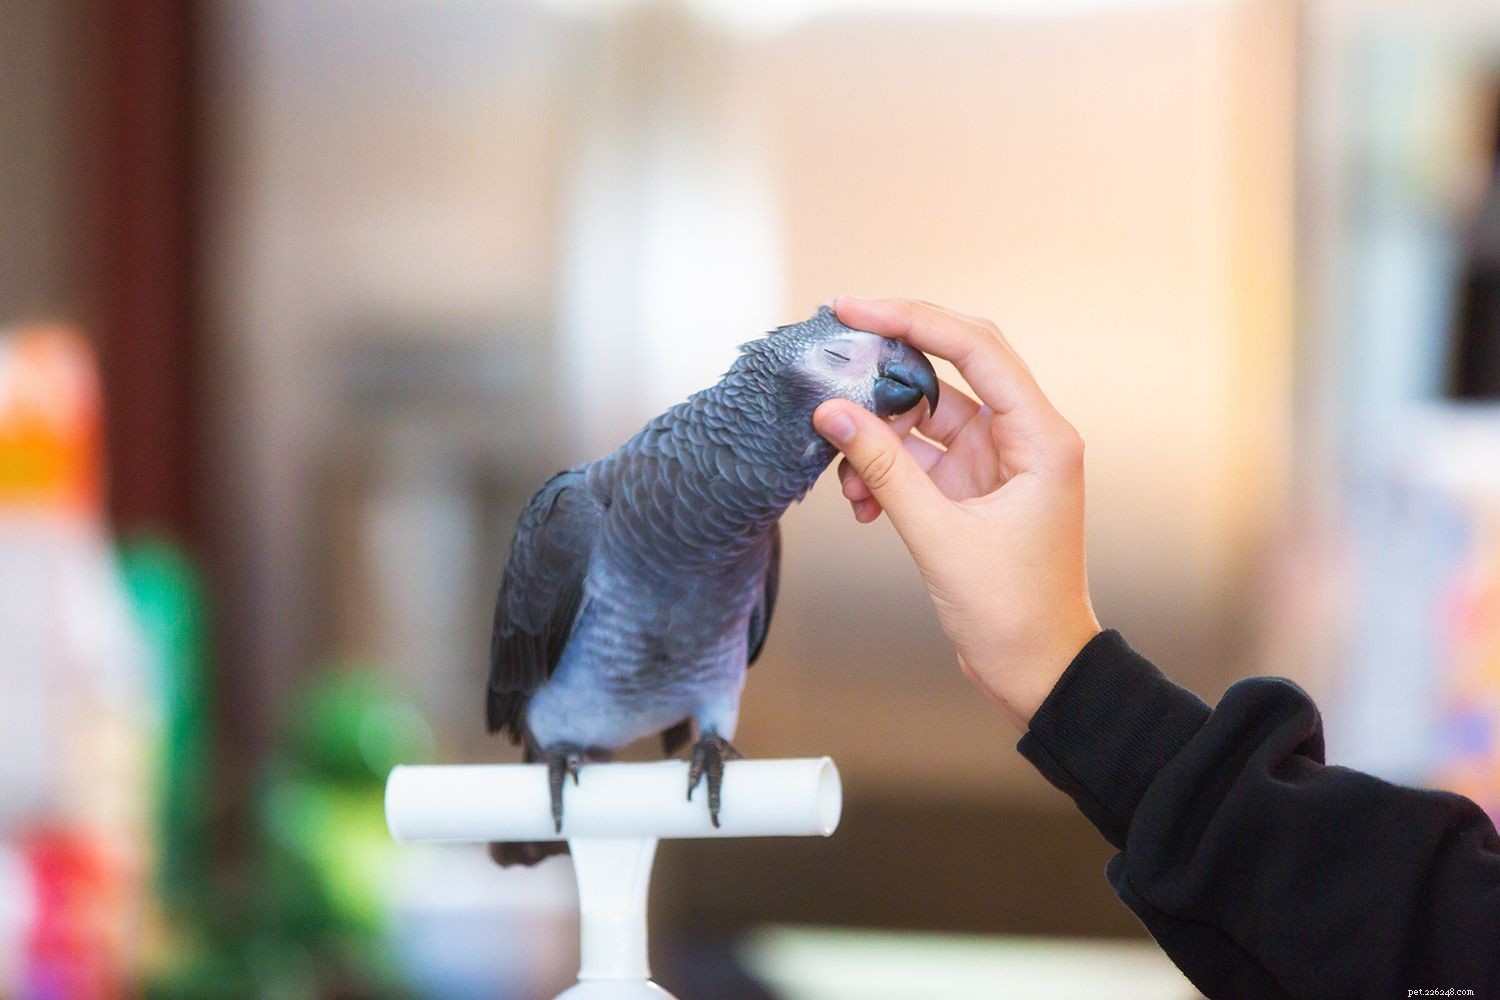 Как научить попугая петь